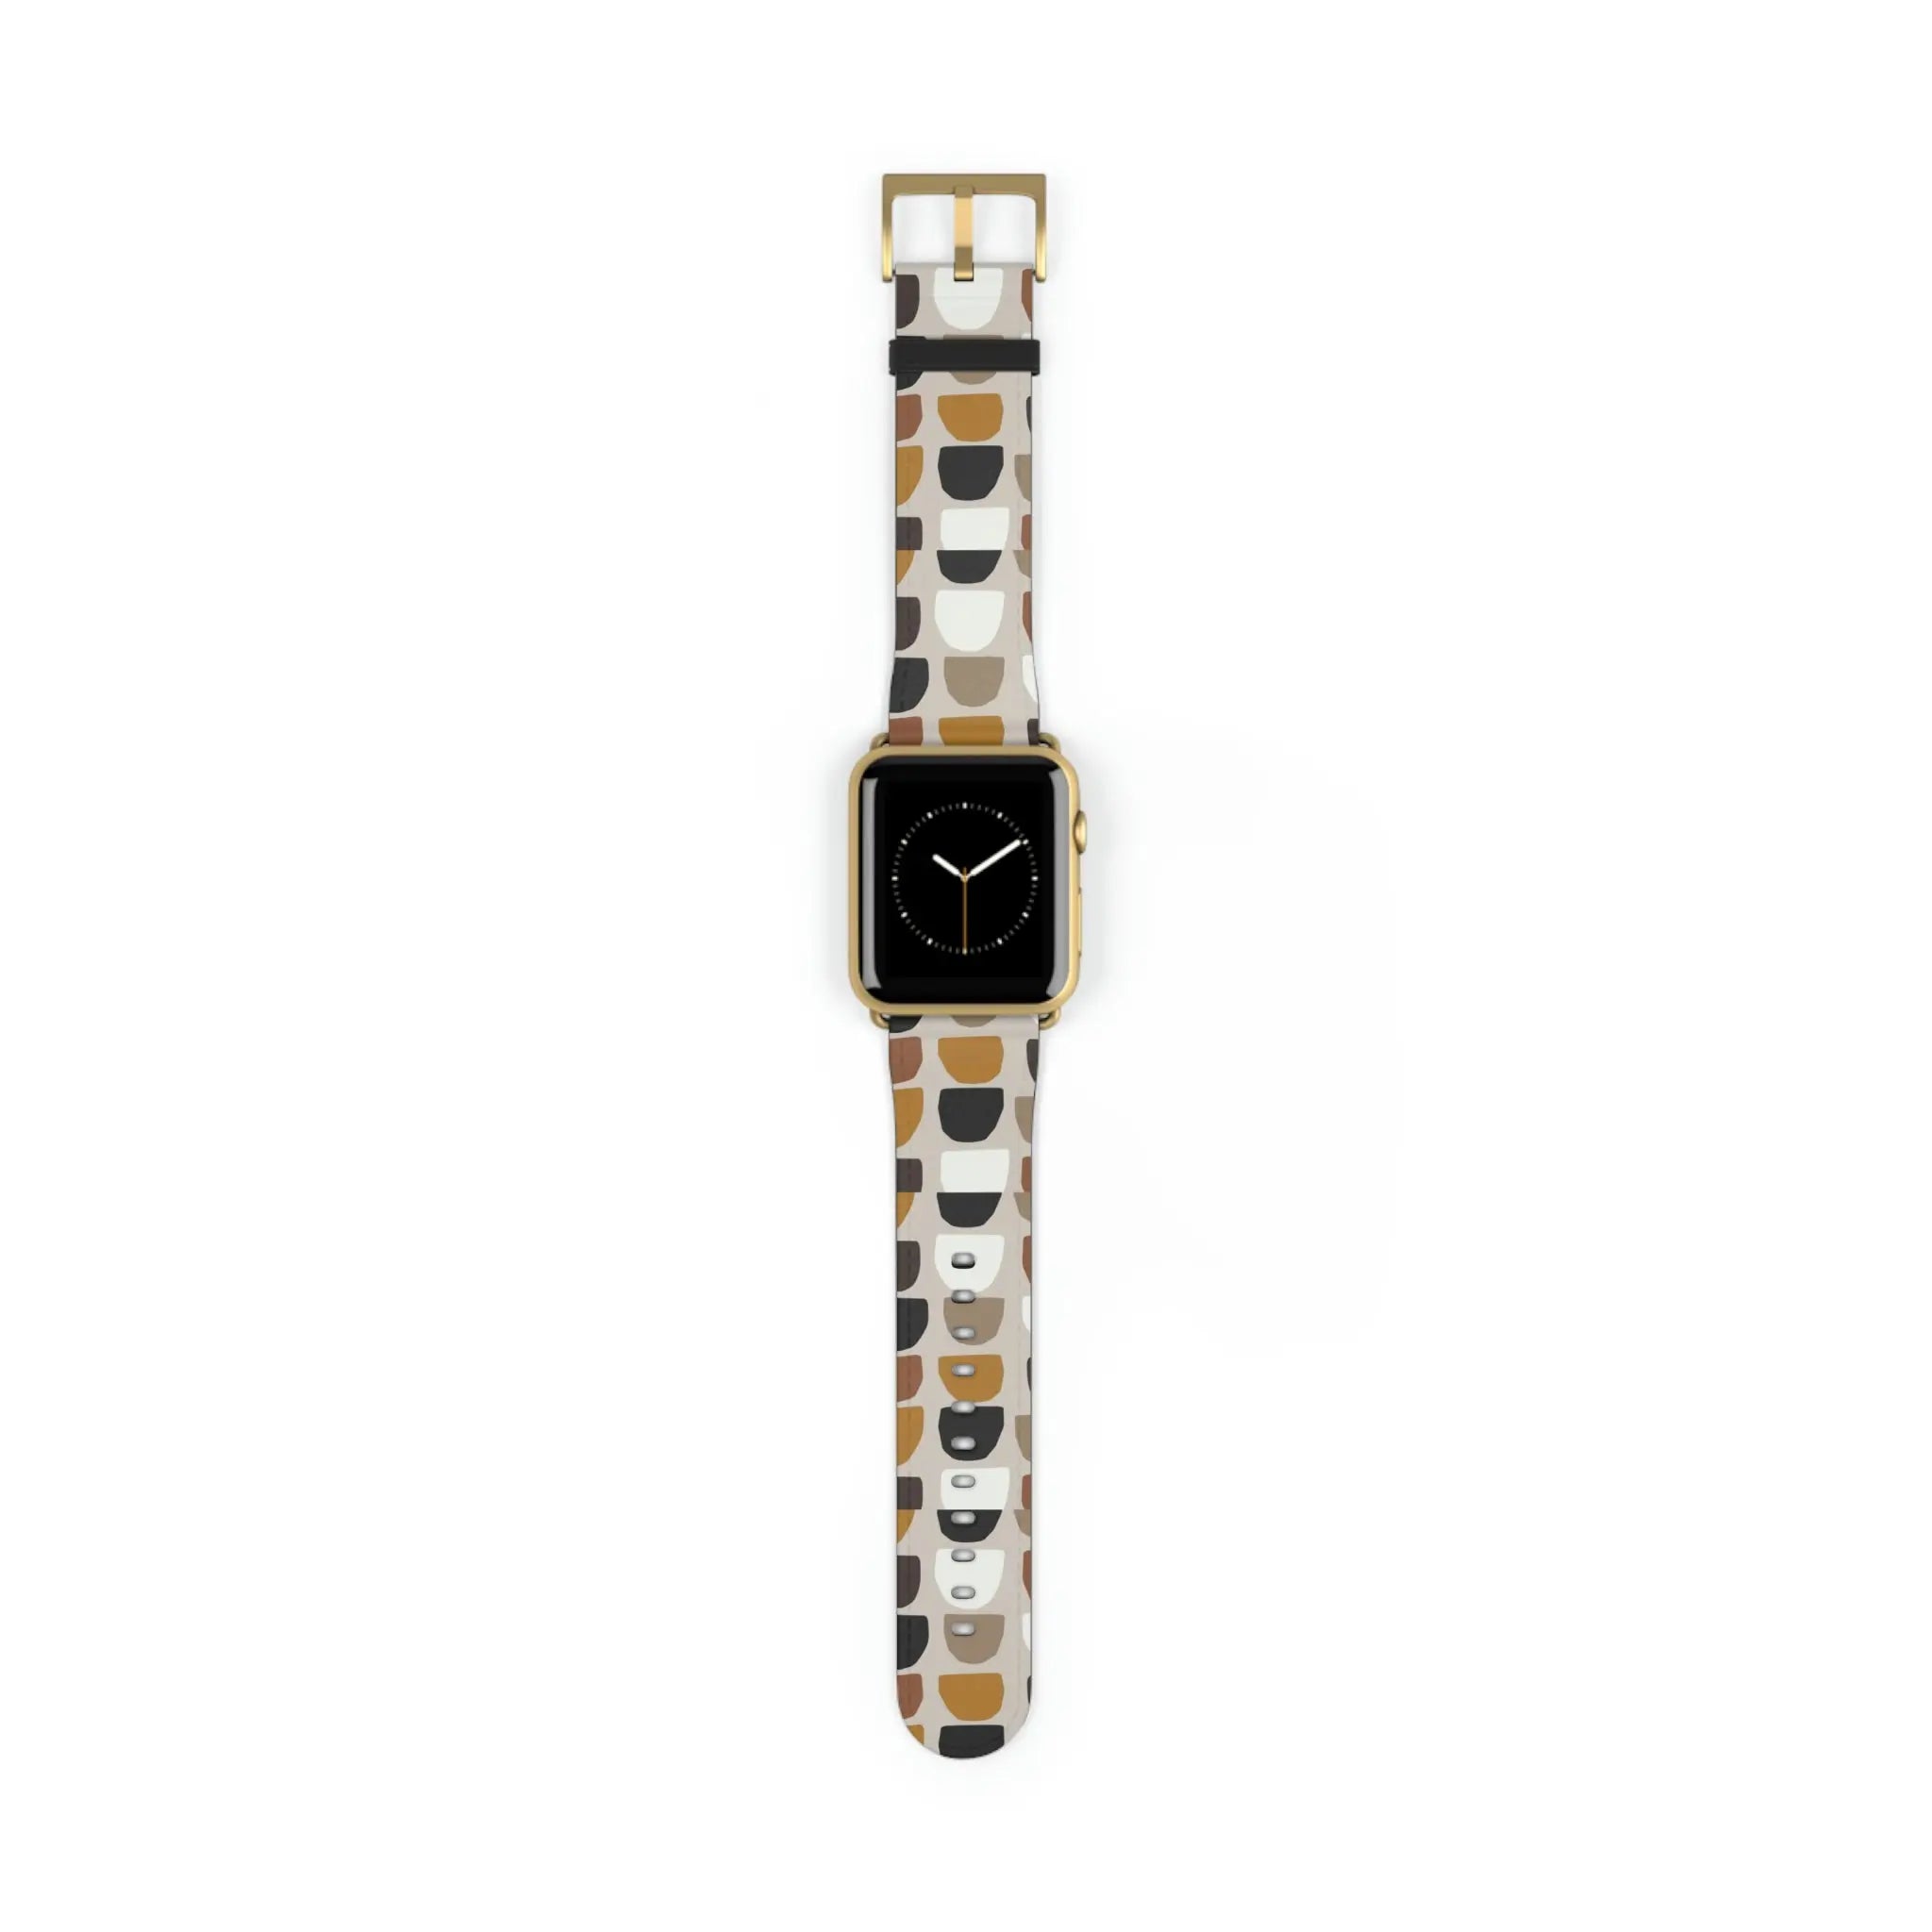  Boho (Khaki) Apple Watch Band Watch Band42-45mmGoldMatte